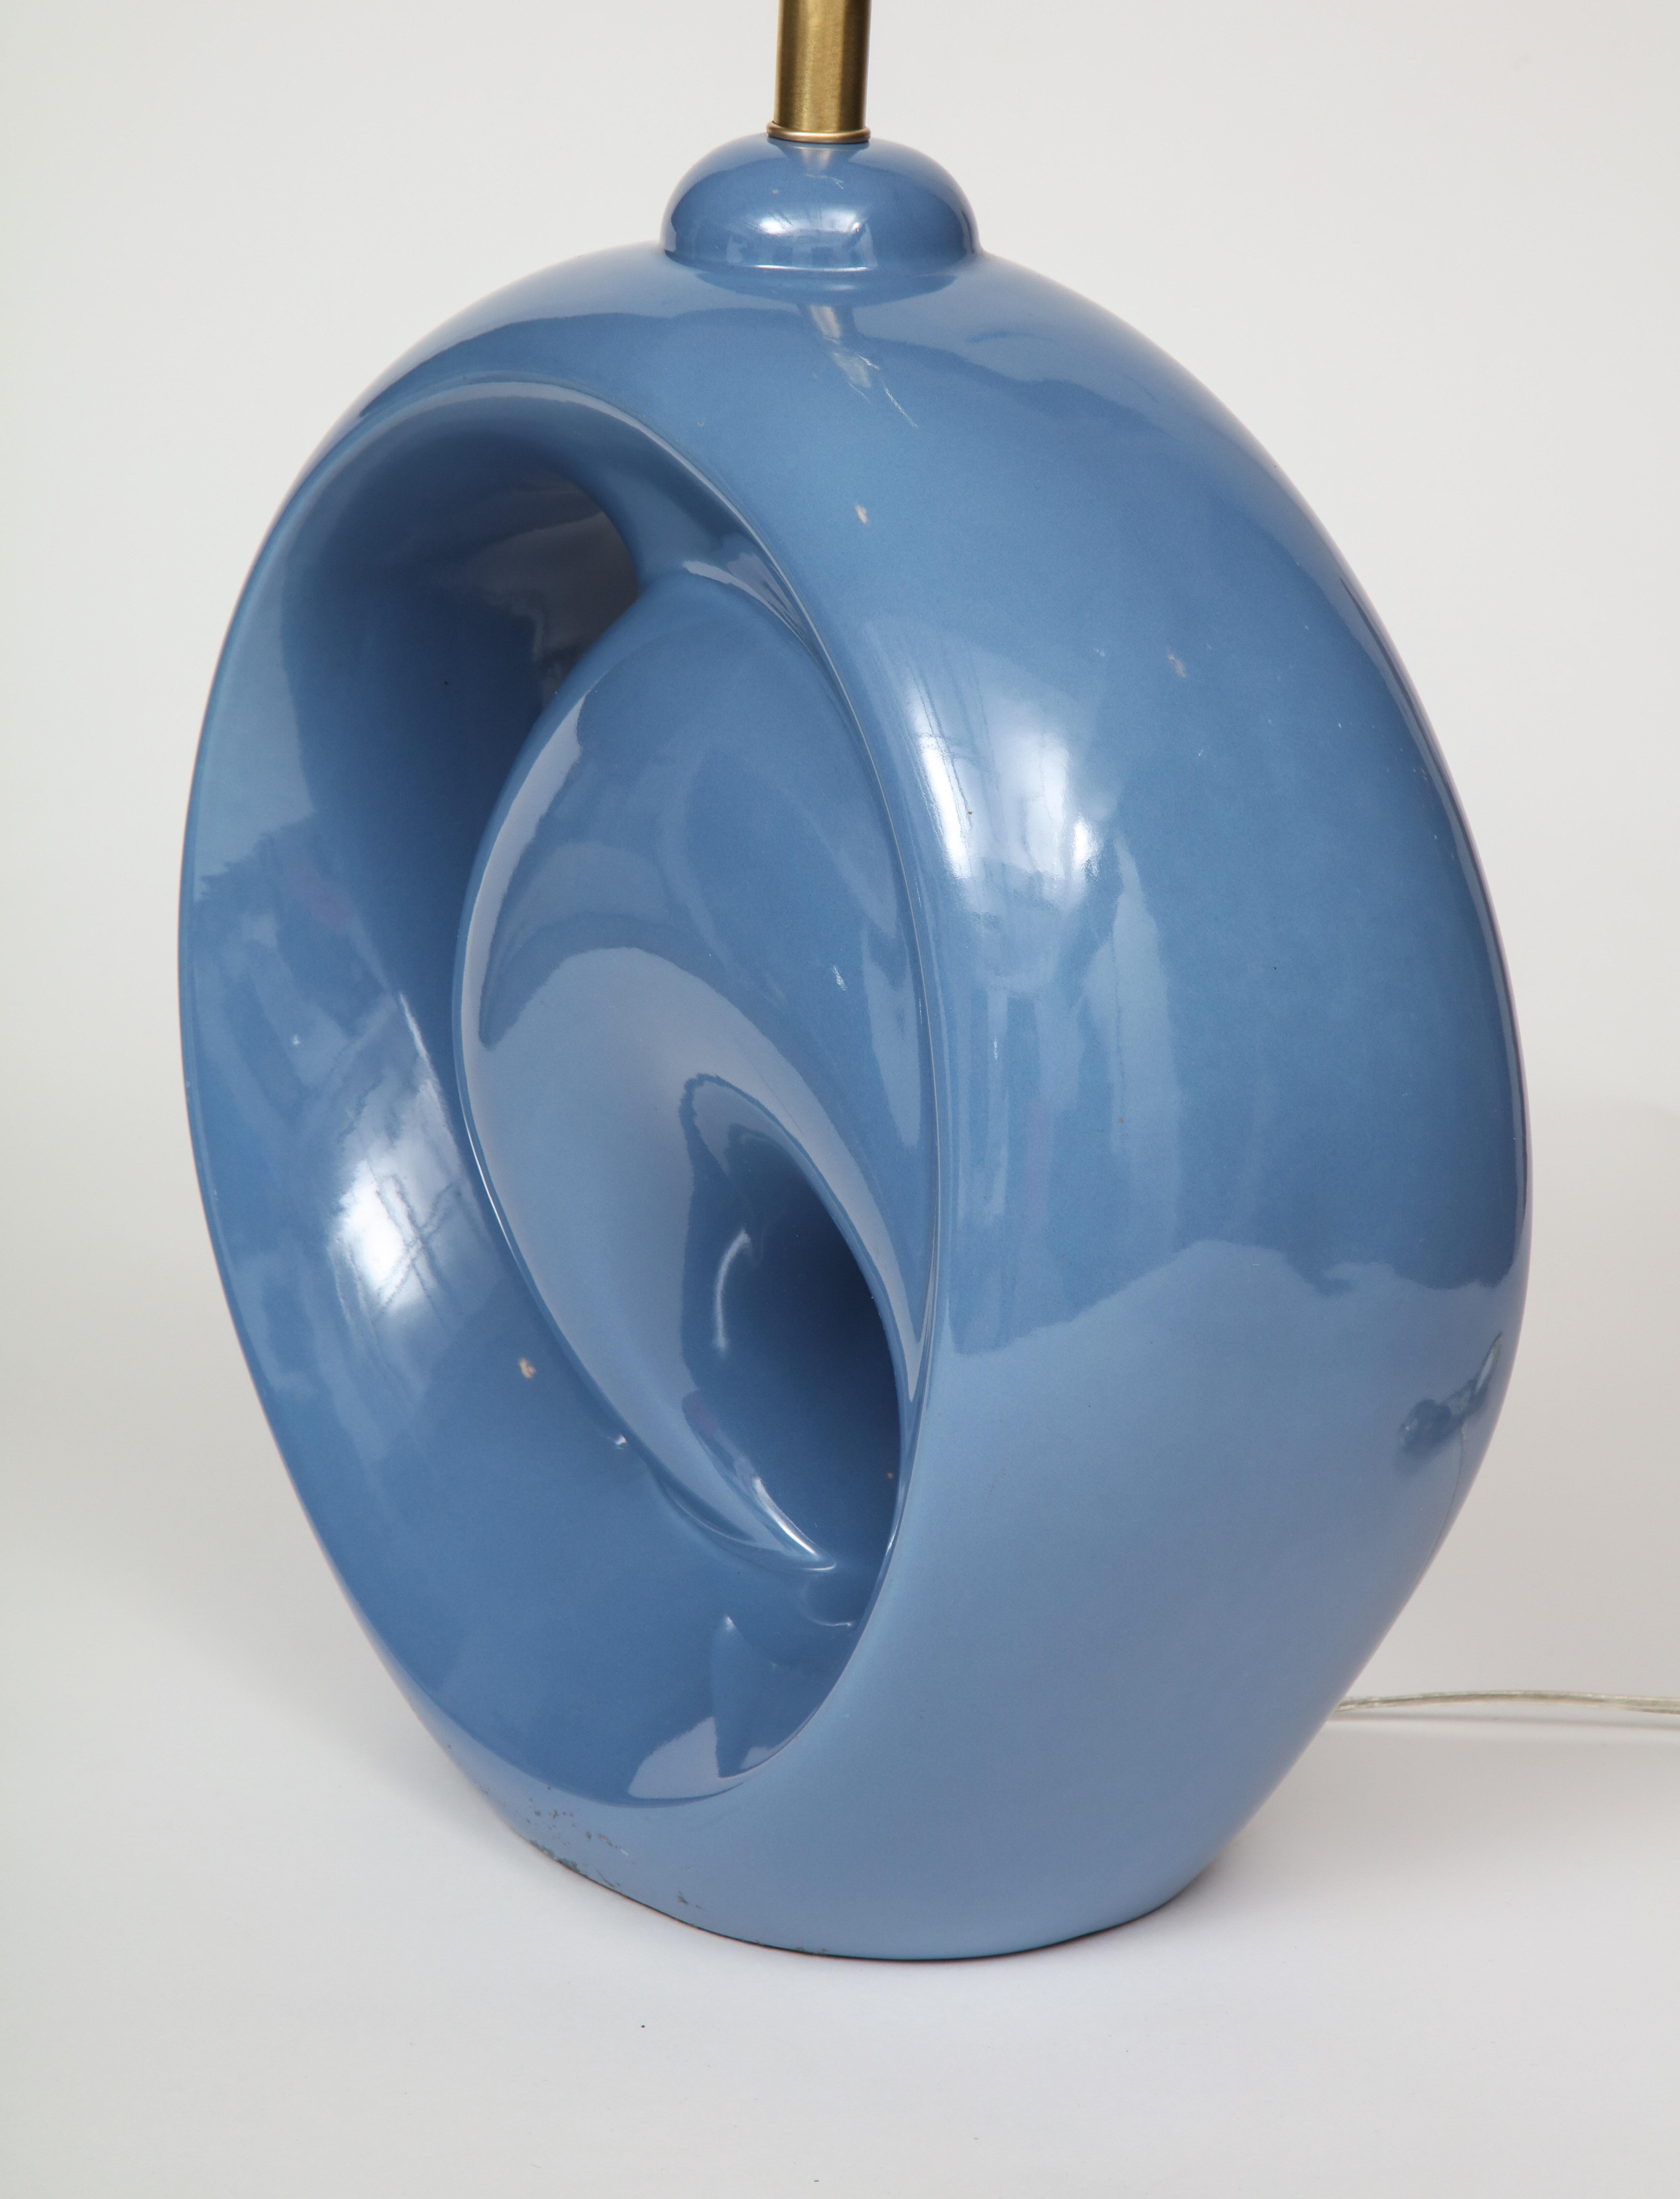 Midcentury Cornflower Blue Porcelain Lamps For Sale 3